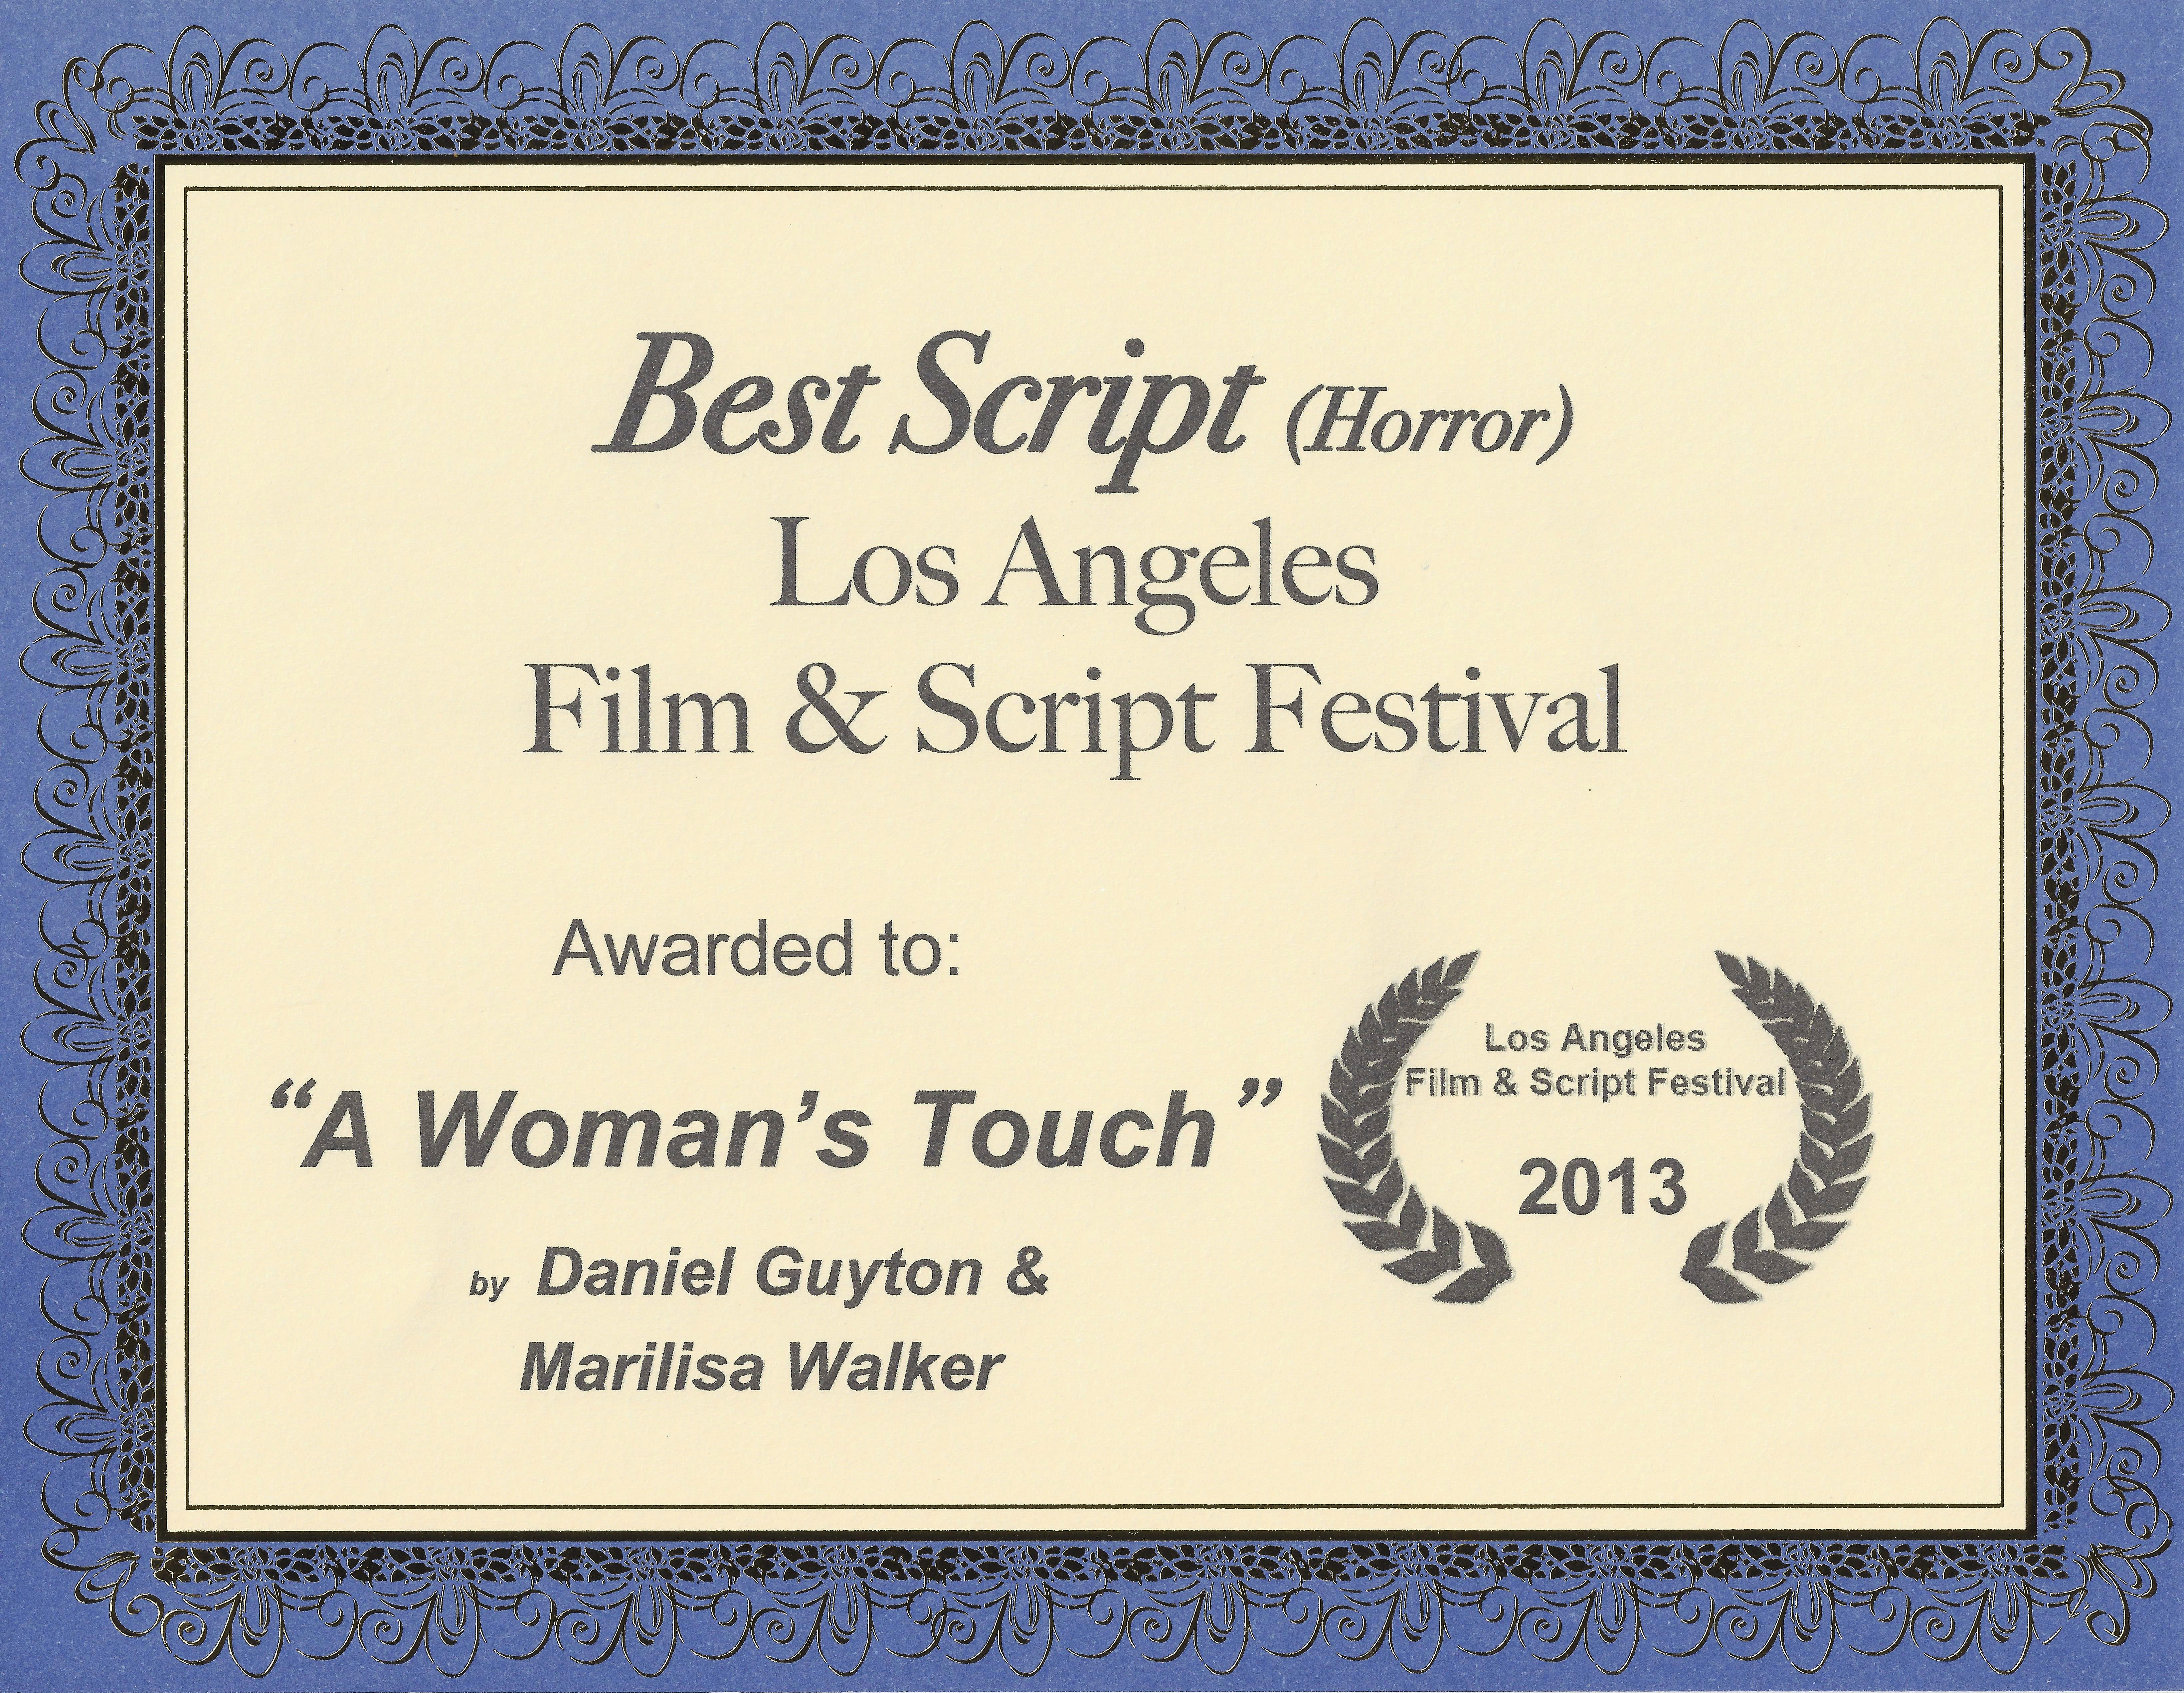 Winner of the Best Script (Horror) award from the Los Angeles Film & Script Festival for 